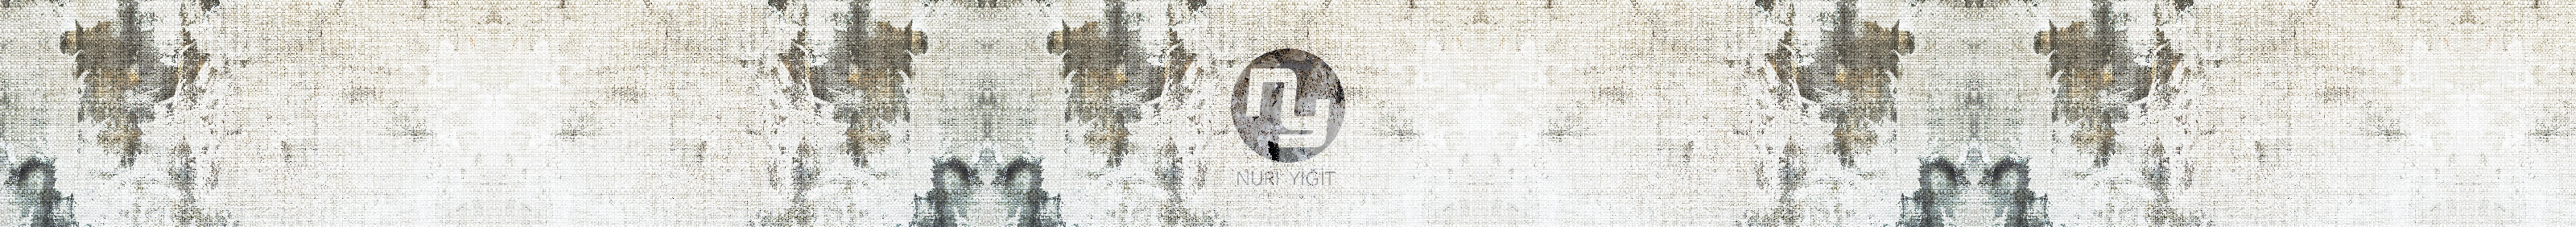 Nuri Yiğit のプロファイルバナー